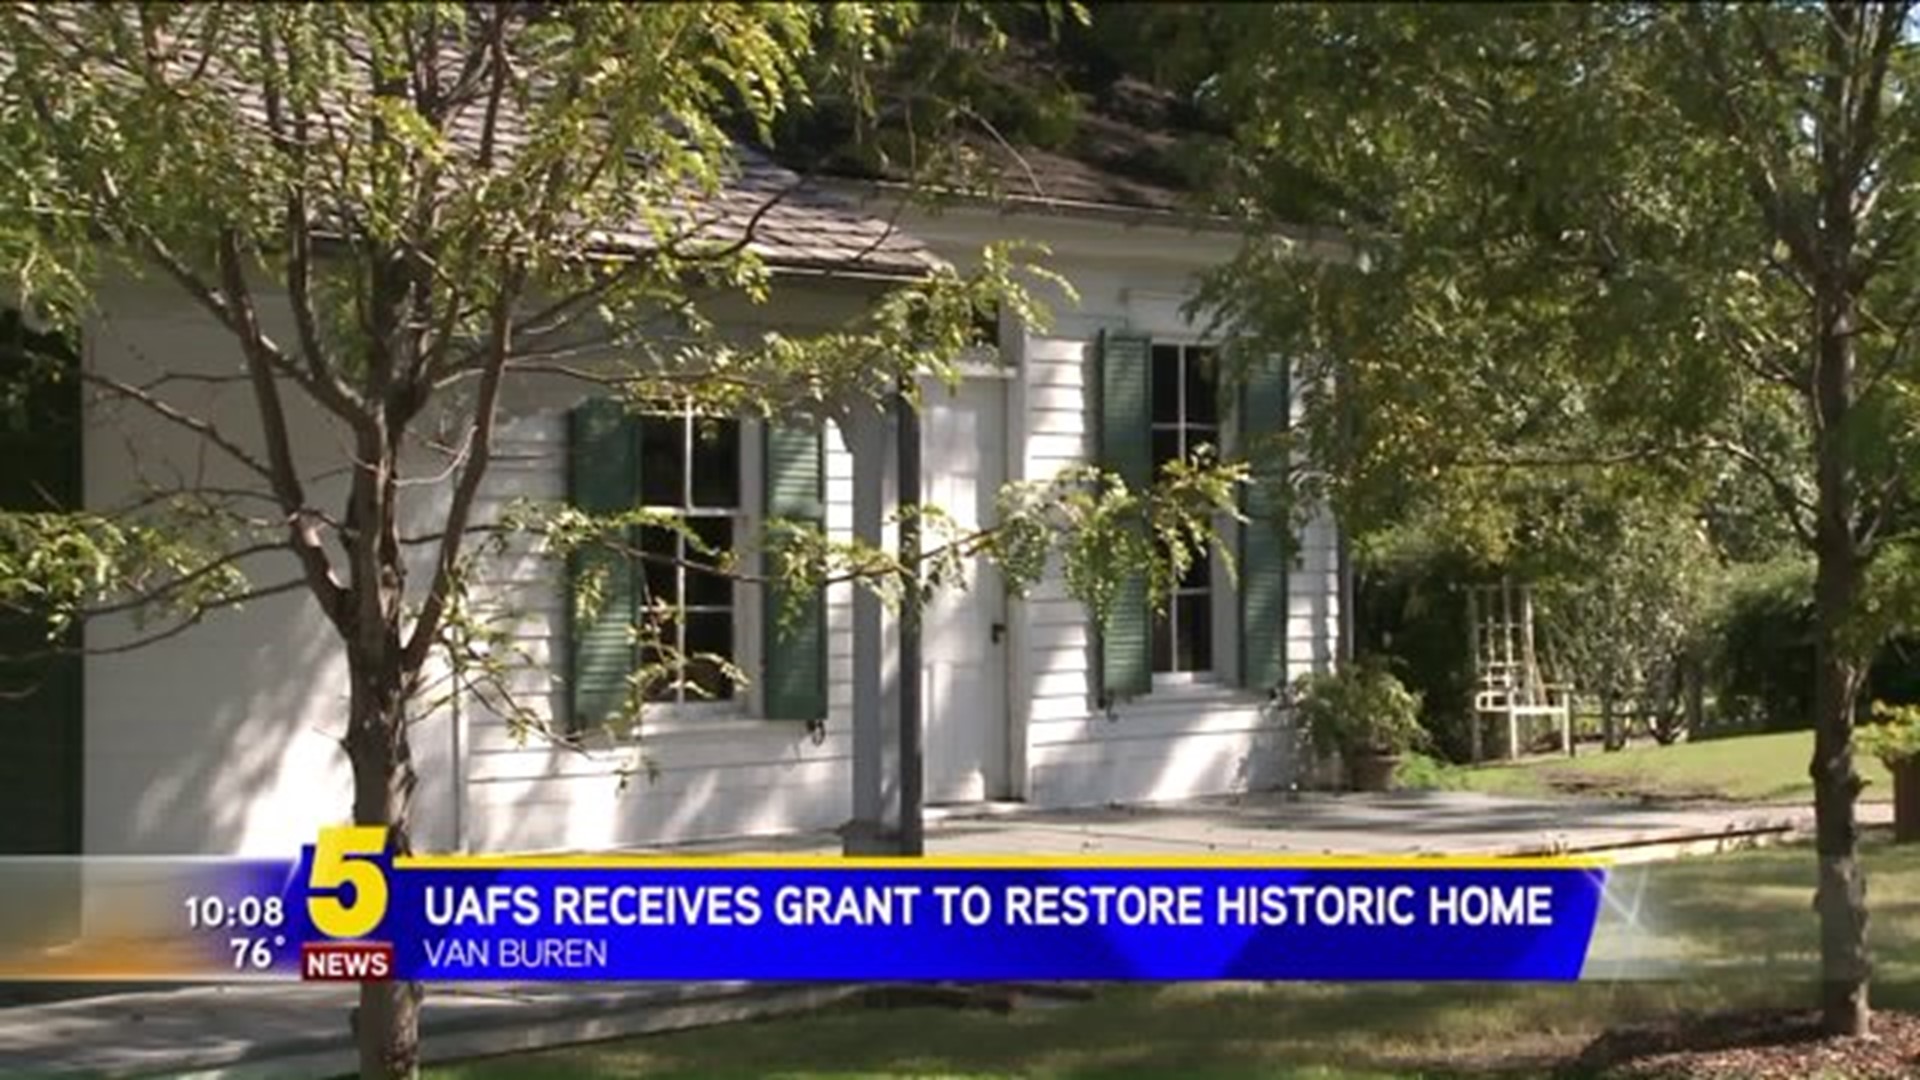 UAFS To Restore Historic Van Buren Home